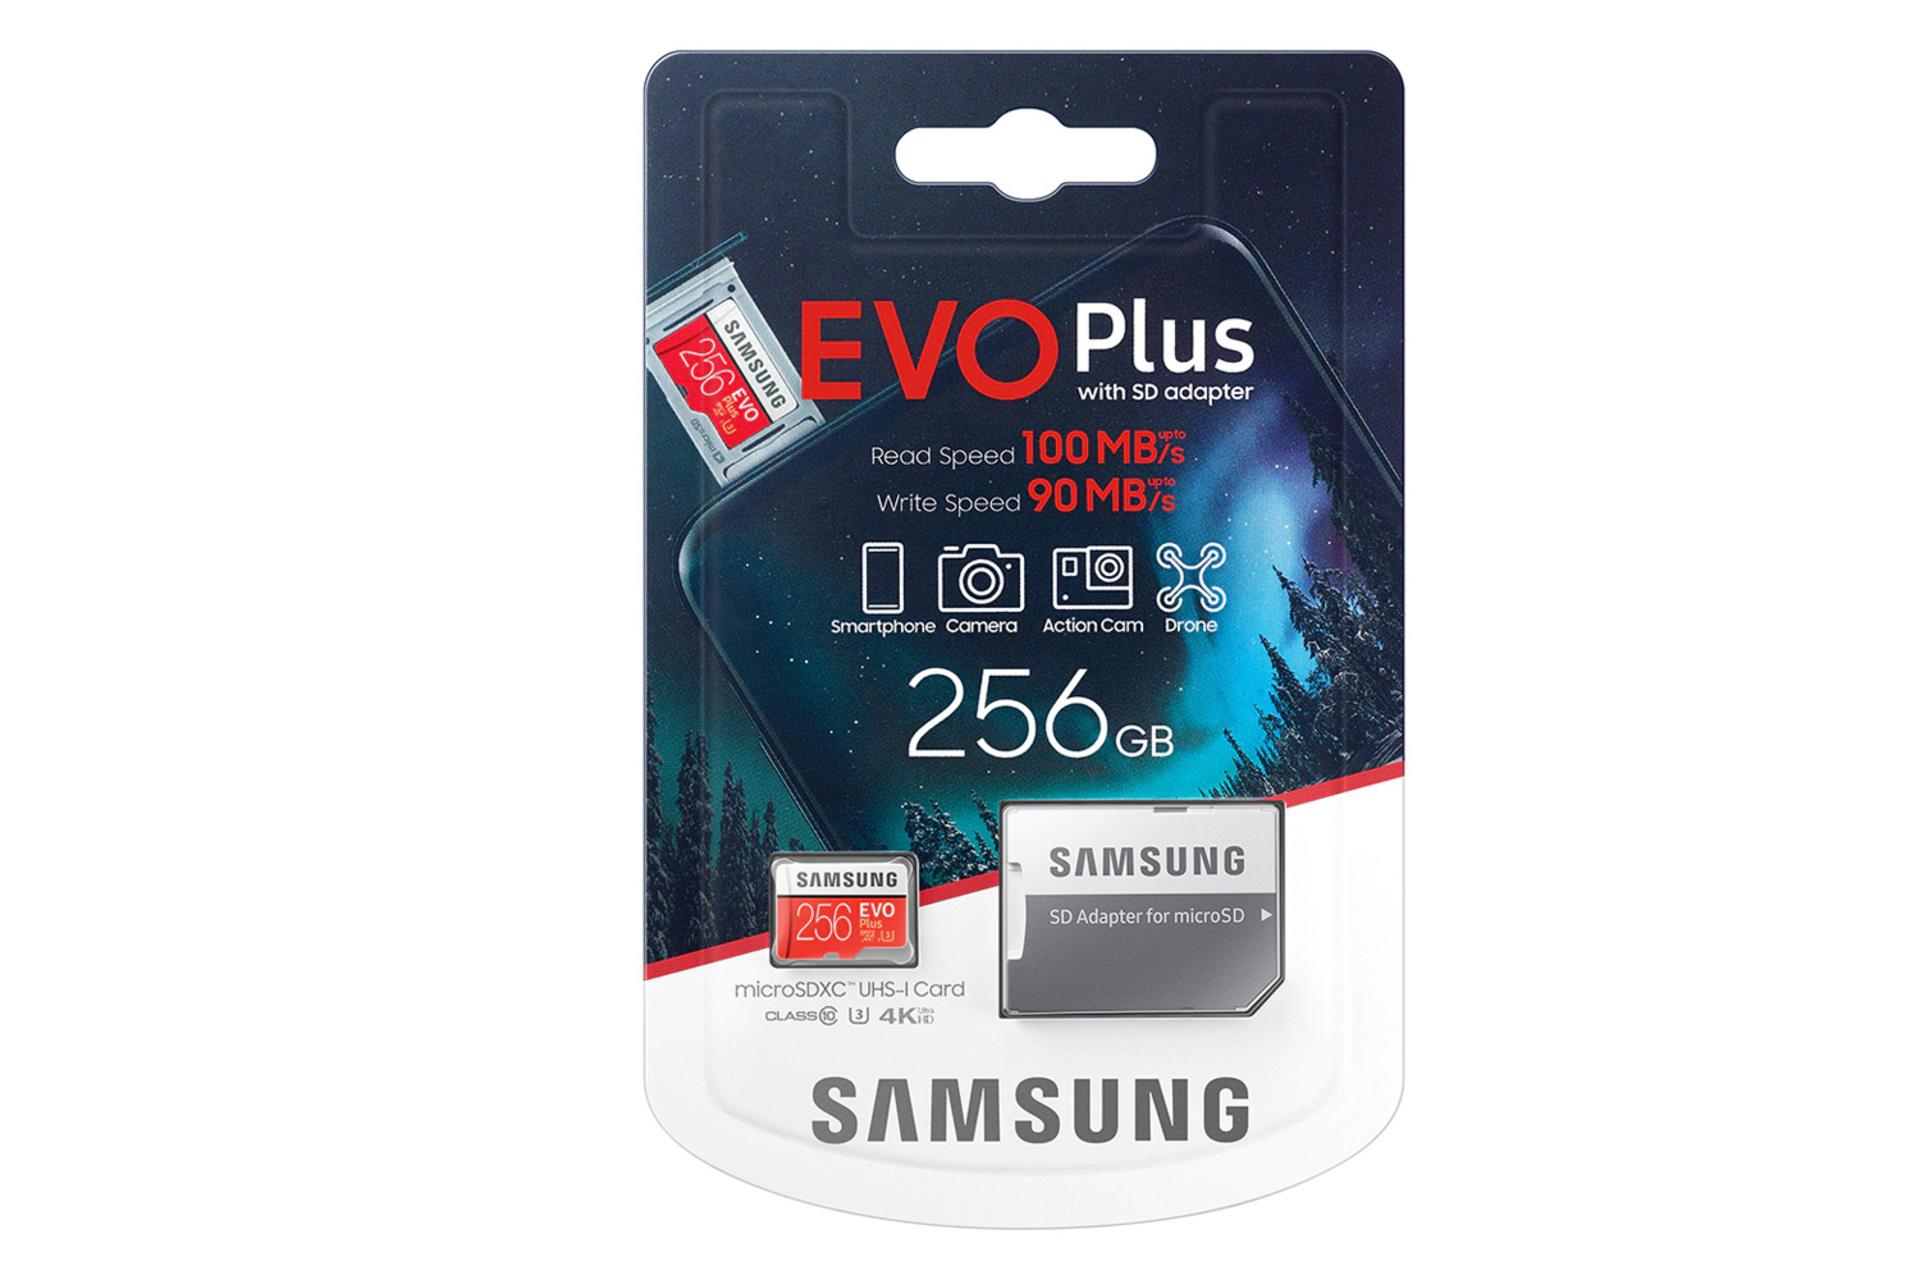 جعبه مموری کارت سامسونگ microSDXC با ظرفیت 256 گیگابایت مدل Evo Plus کلاس 10